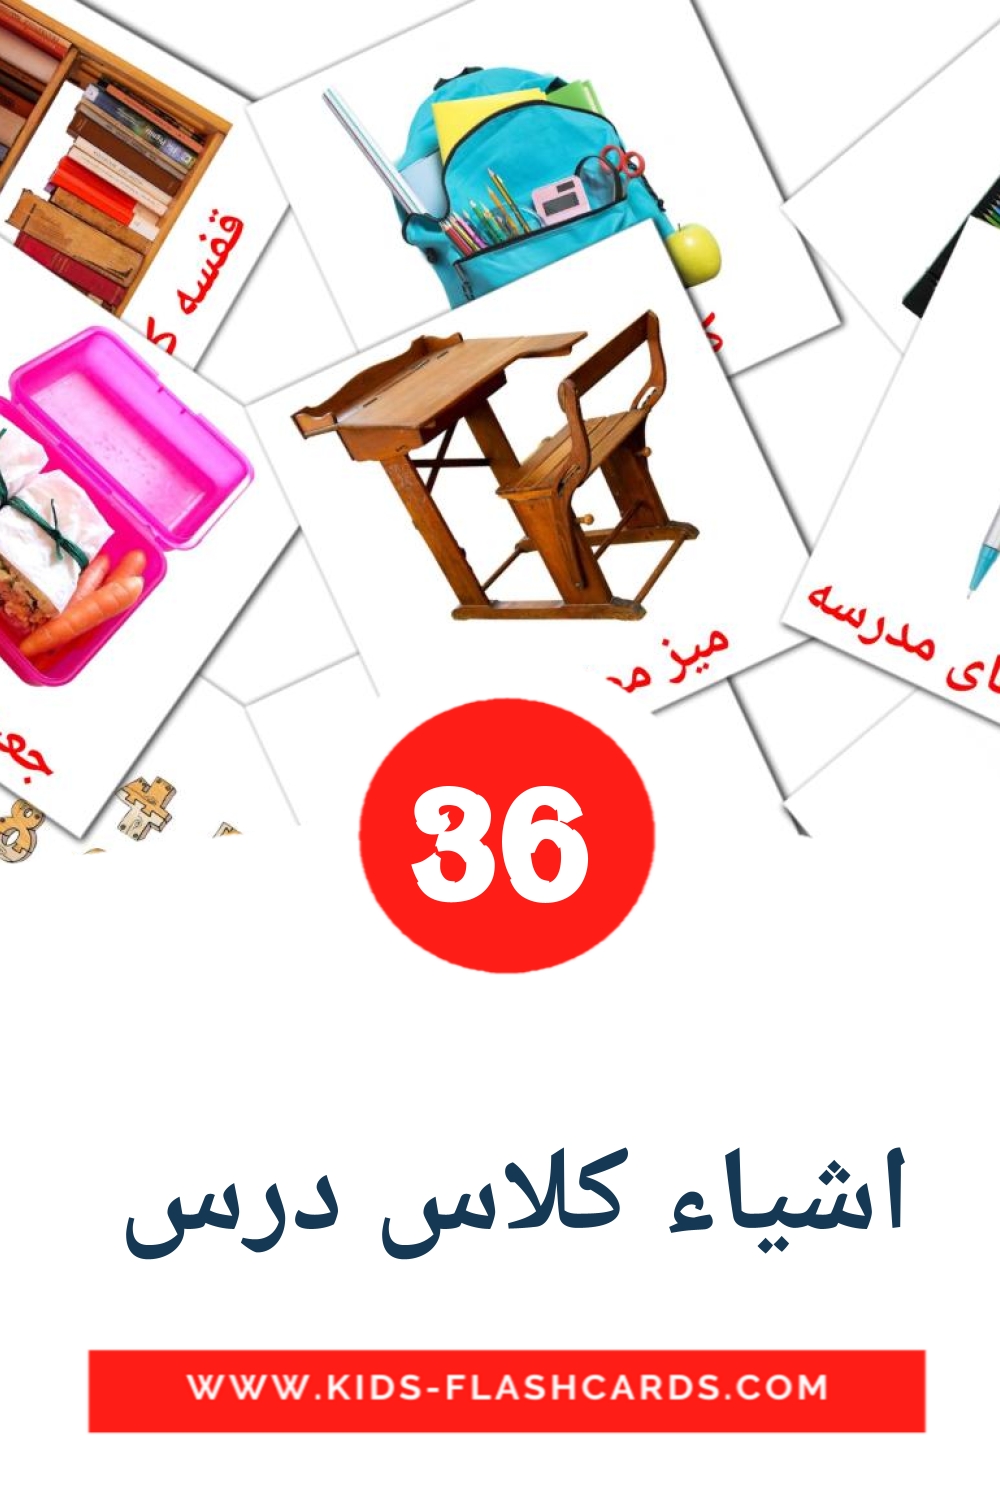 36 اشیاء کلاس درس  Picture Cards for Kindergarden in persian